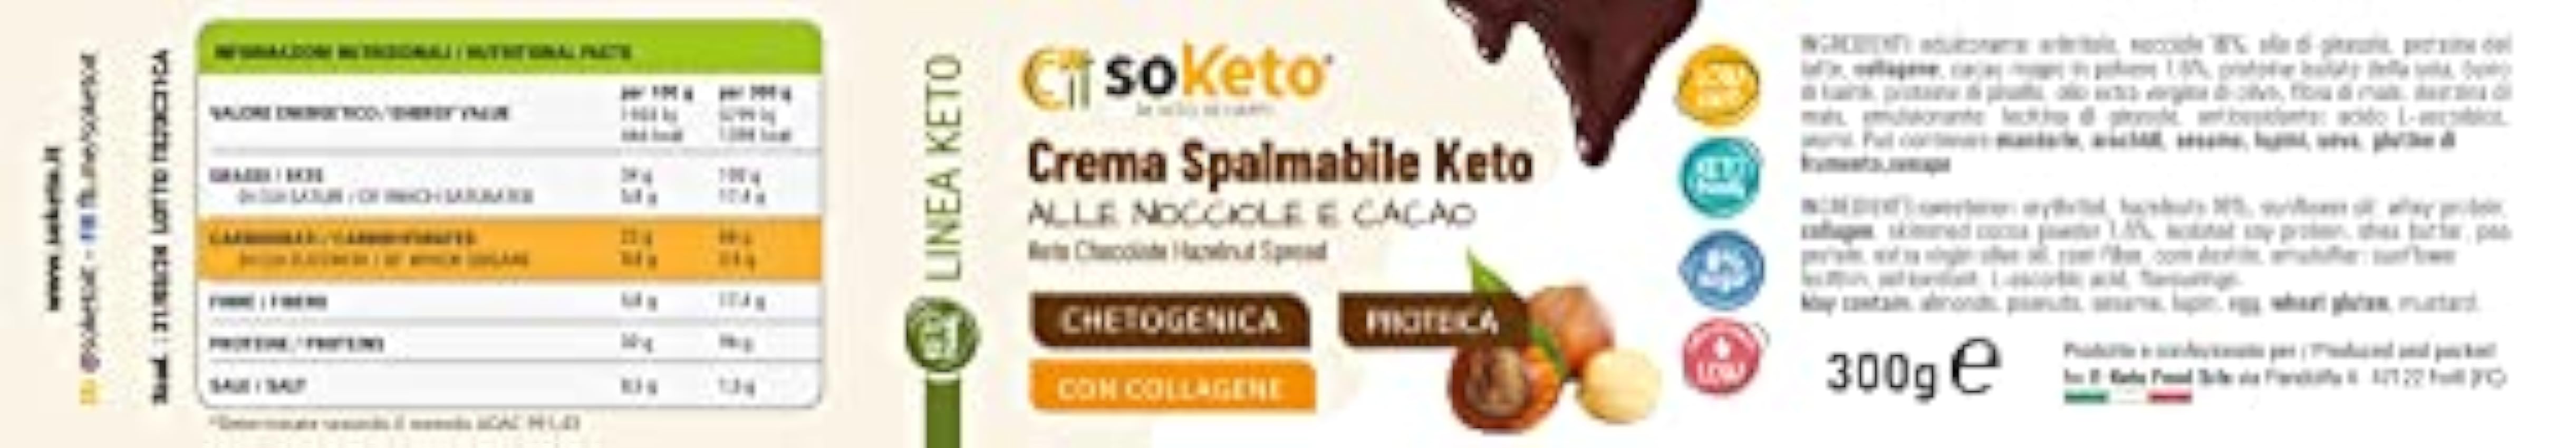 Crema untable Keto de Avellanas y Cacao 0% de Azúcares SOKETO – 300 gr.- Para dieta Keto y Low Carb Exquisita crema para untar ceto de avellanas y cacao ocKtgXyK